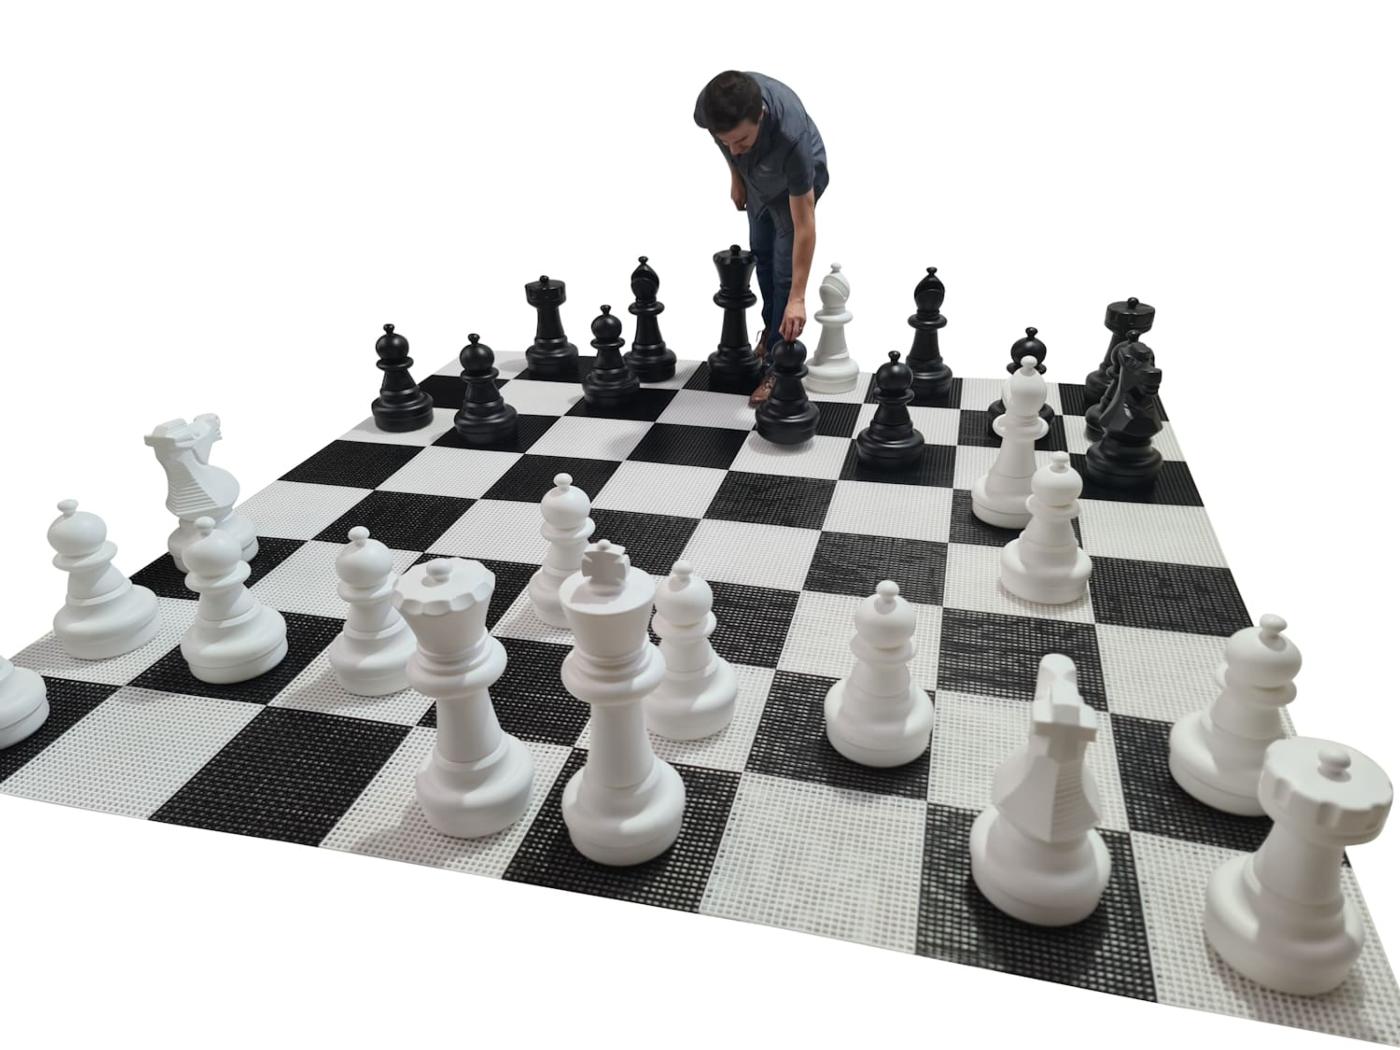 Juego de ajedrez gigante con tablero rígido gigante incluido juego completo sobre tablero con jugador vista 2